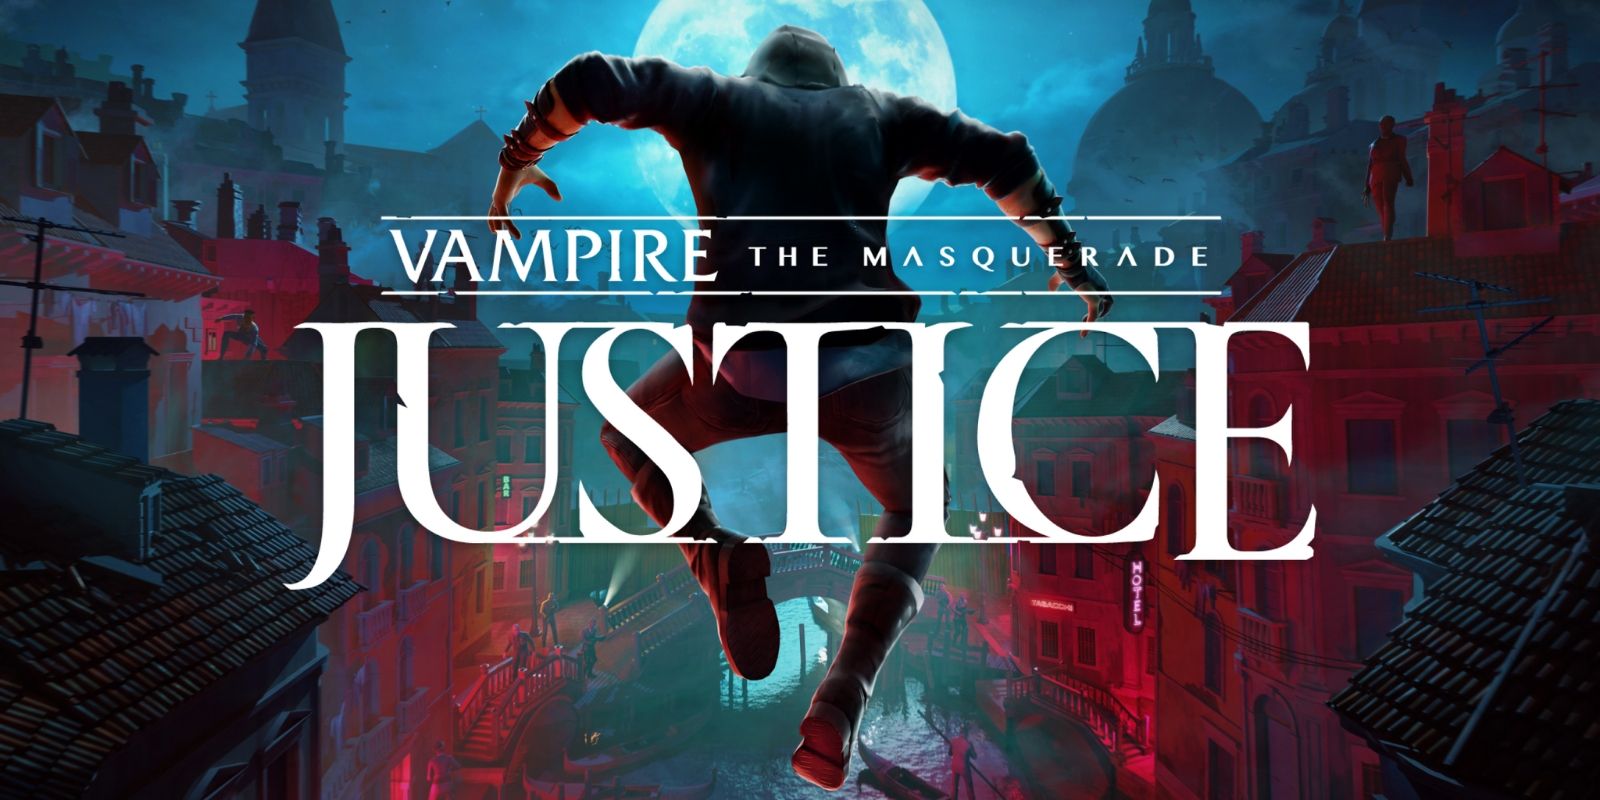 "Sombrío, sangriento e inmersivo" - Vampire: The Masquerade - Justice Review